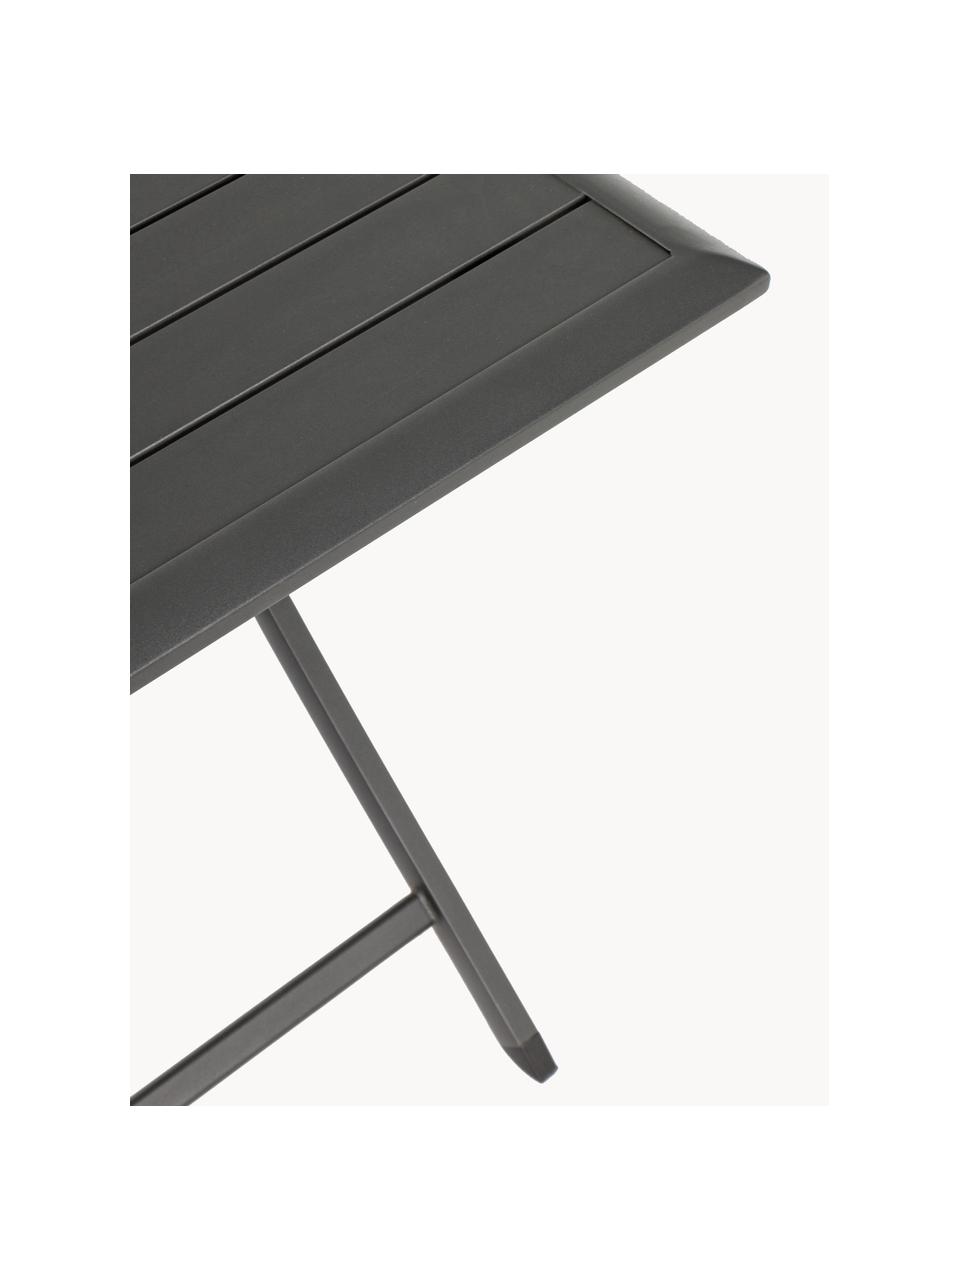 Skládací zahradní stůl Elin, 70 x 70 cm, Hliník s práškovým nástřikem, Černá, Š 70 cm, H 70 cm